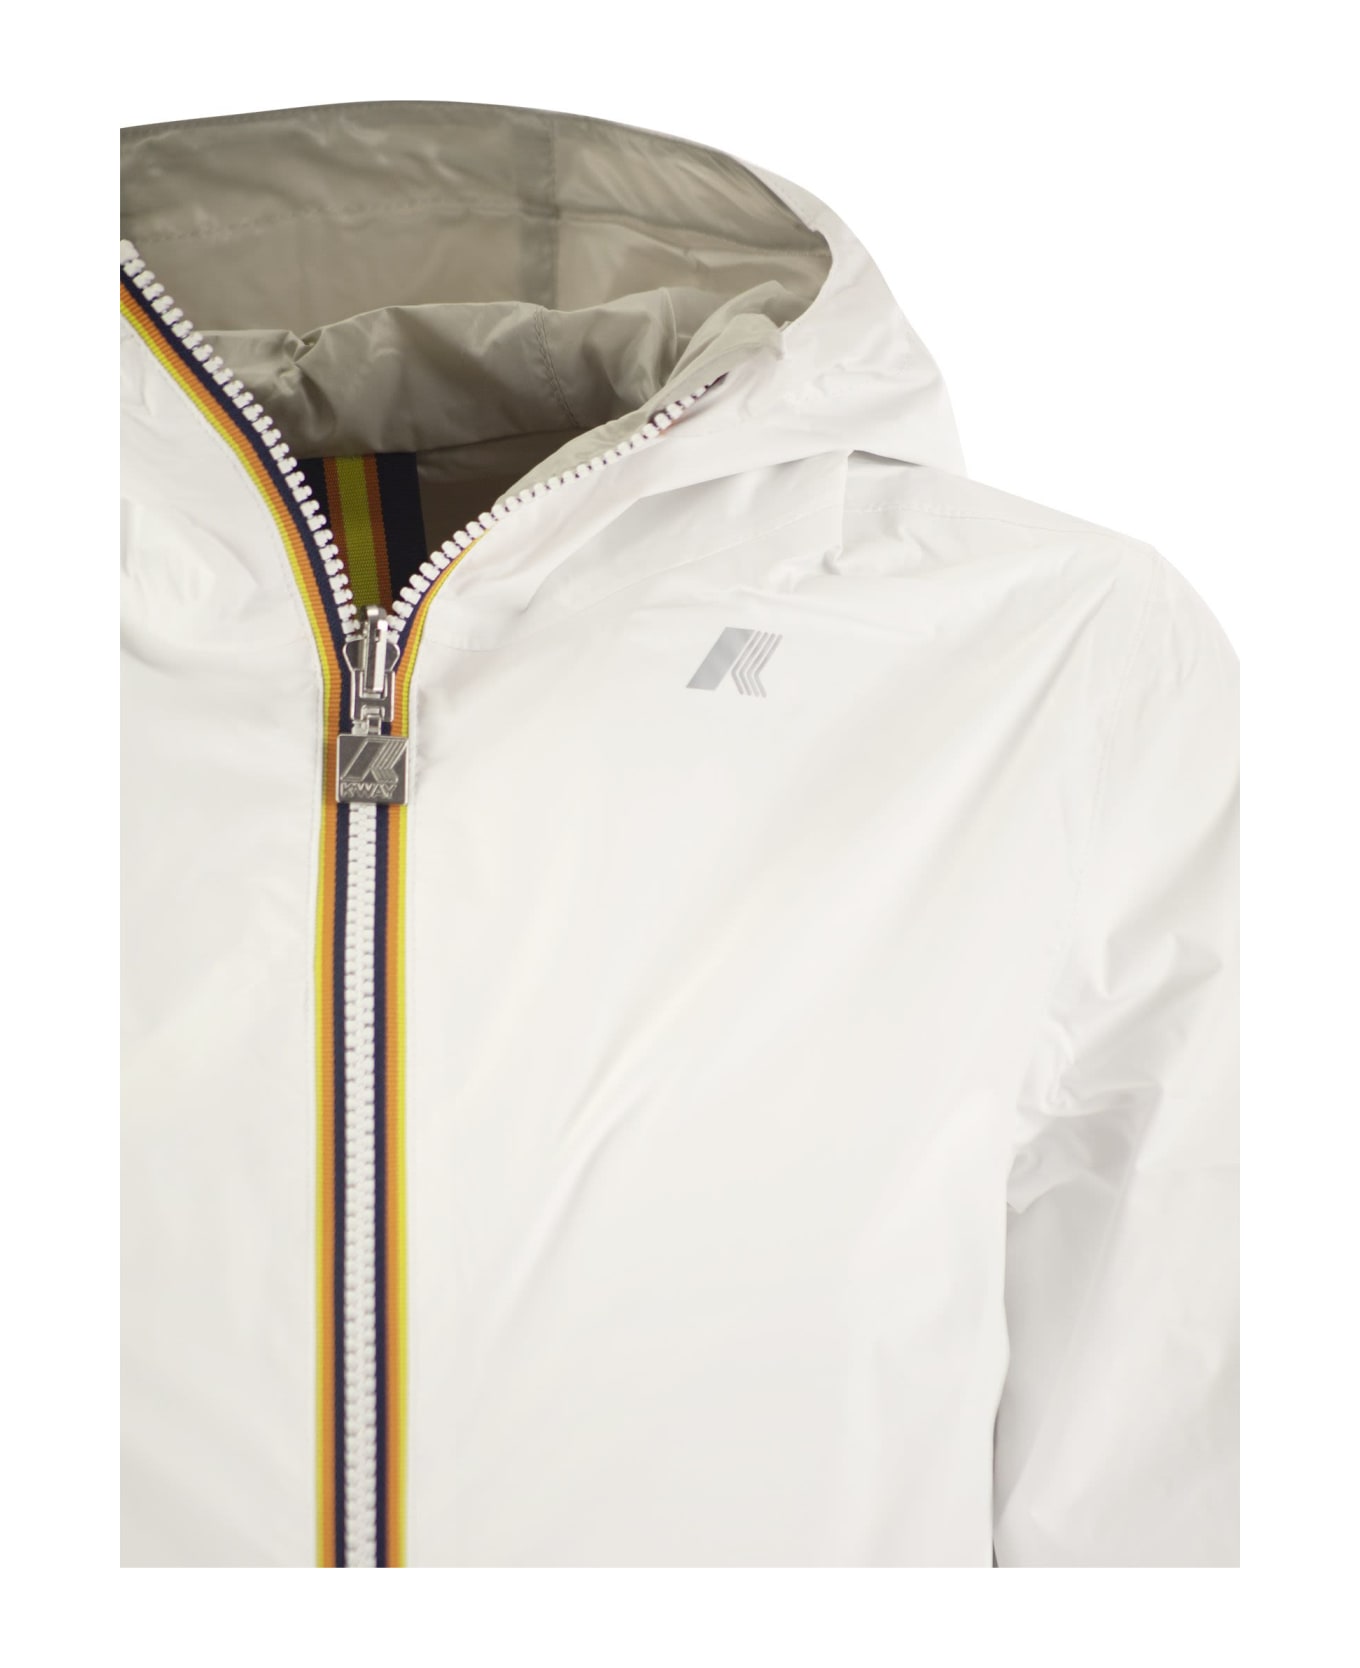 K-Way Sophie Plus - Reversible Hooded Jacket - White/beige